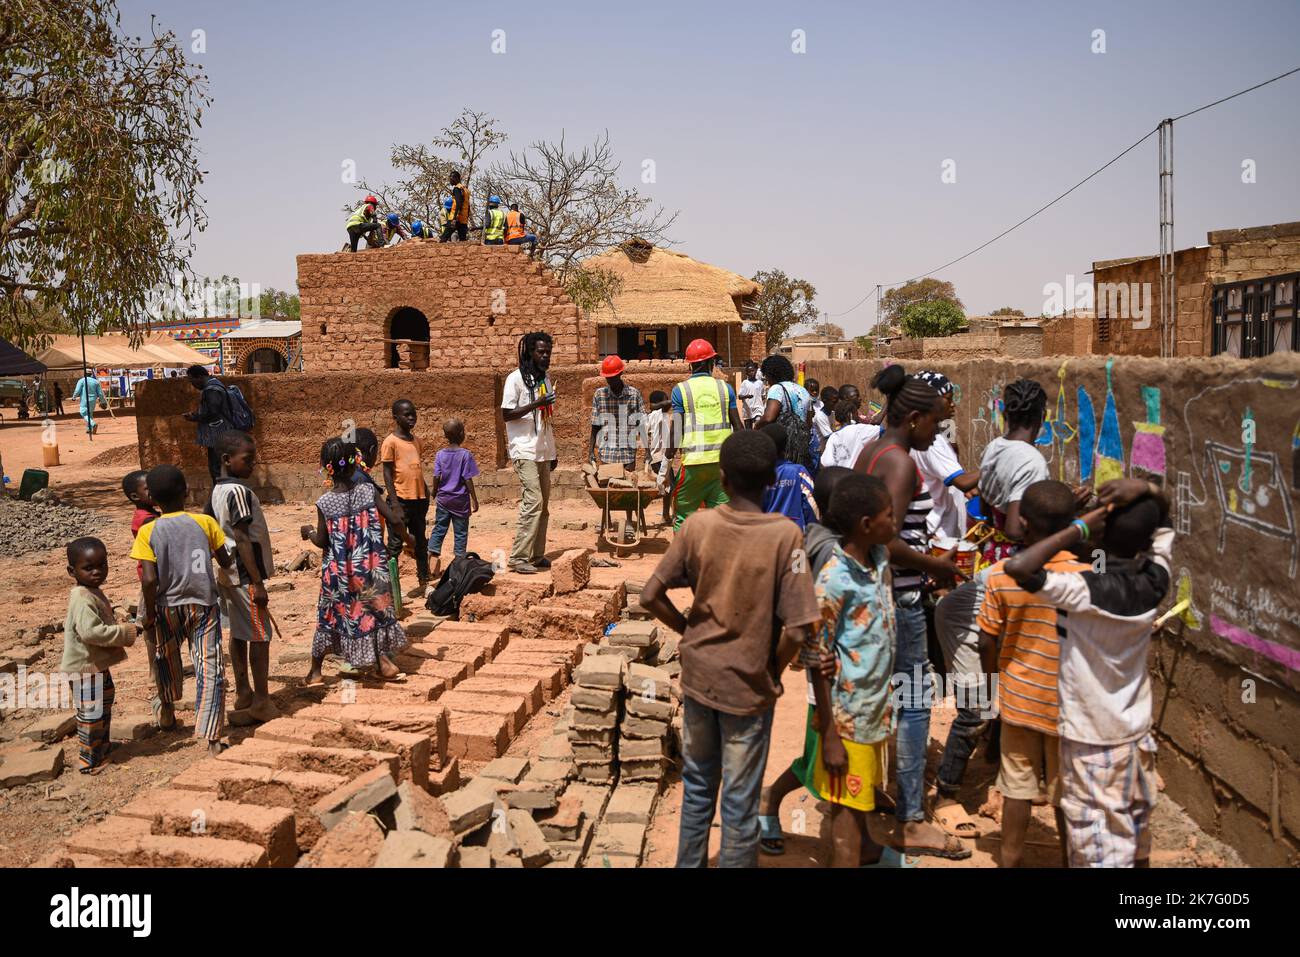 ©Nicolas Remene / le Pictorium/MAXPPP - Nicolas Remene / le Pictorium - 27/2/2021 - Burkina Faso / Ouagadougou / Ouagadougou - 5eme Edition du seminaire FACTsahel+ les 25, 26, 27 et 28 fevrier 2021 a Ouagadougou au Burkina Faso. Le « FACT sahel+ » est le reseau qui federe les acteurs de la Construction en Terre au Sahel et dans ses says limitrophes. / 27/2/2021 - Burkina Faso () / Ouagadougou / Ouagadougou - 5th° edizione del seminario FACTsahel+ del 25, 26, 27 e 28 febbraio 2021 a Ouagadougou, Burkina Faso. FATTO sahel+' è la rete che federa gli attori della costruzione della Terra nella S Foto Stock